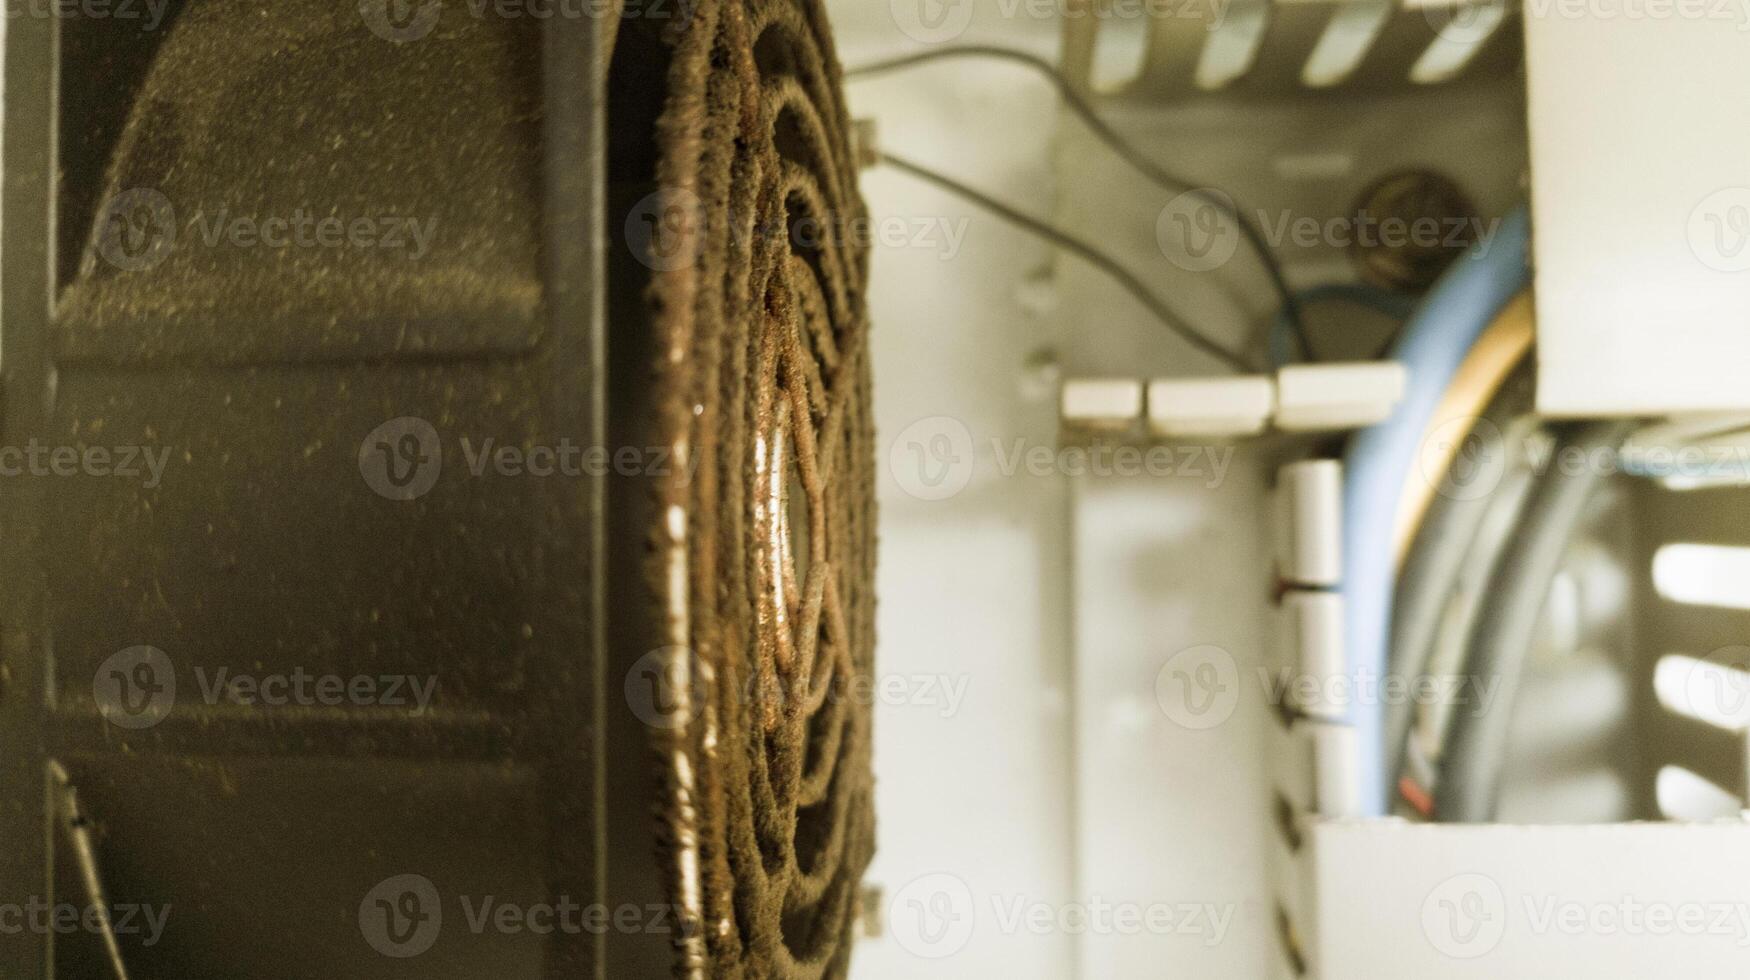 dichtbij omhoog de warmte dissipatie ventilator Aan elektrisch paneel naar koel werken elektrisch componenten. foto